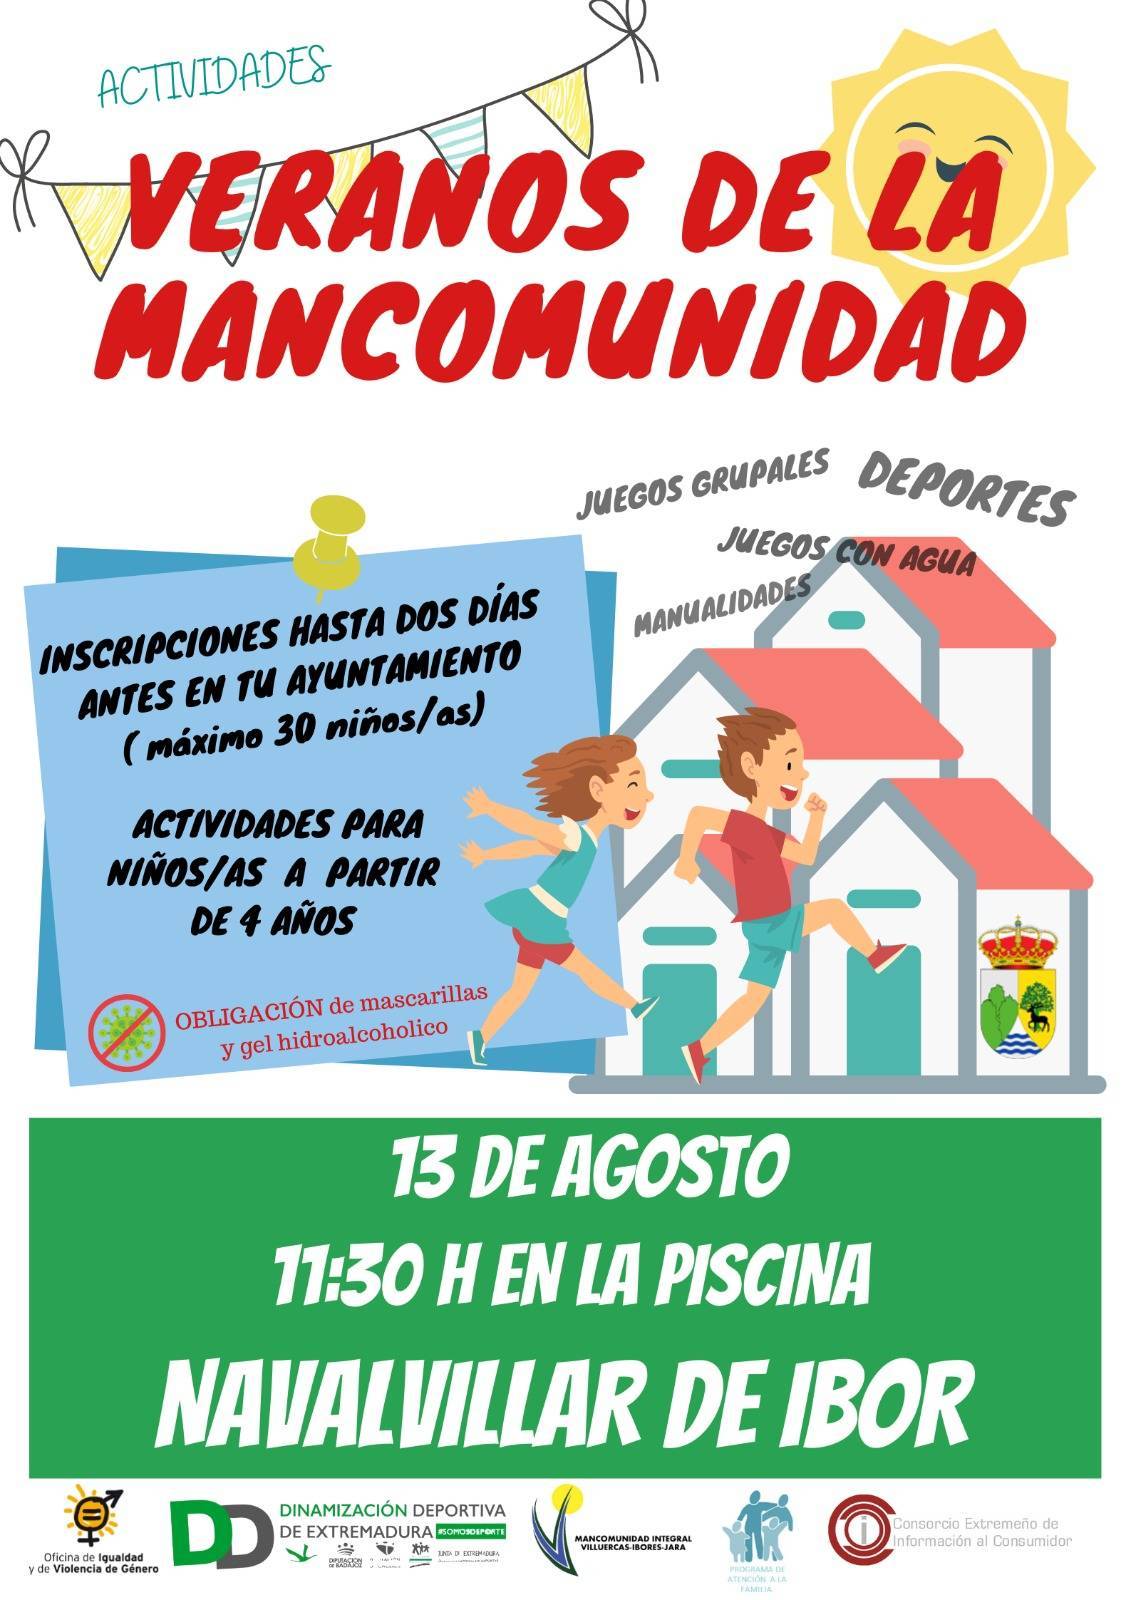 Veranos de la Mancomunidad (2021) - Navalvillar de Ibor (Cáceres)